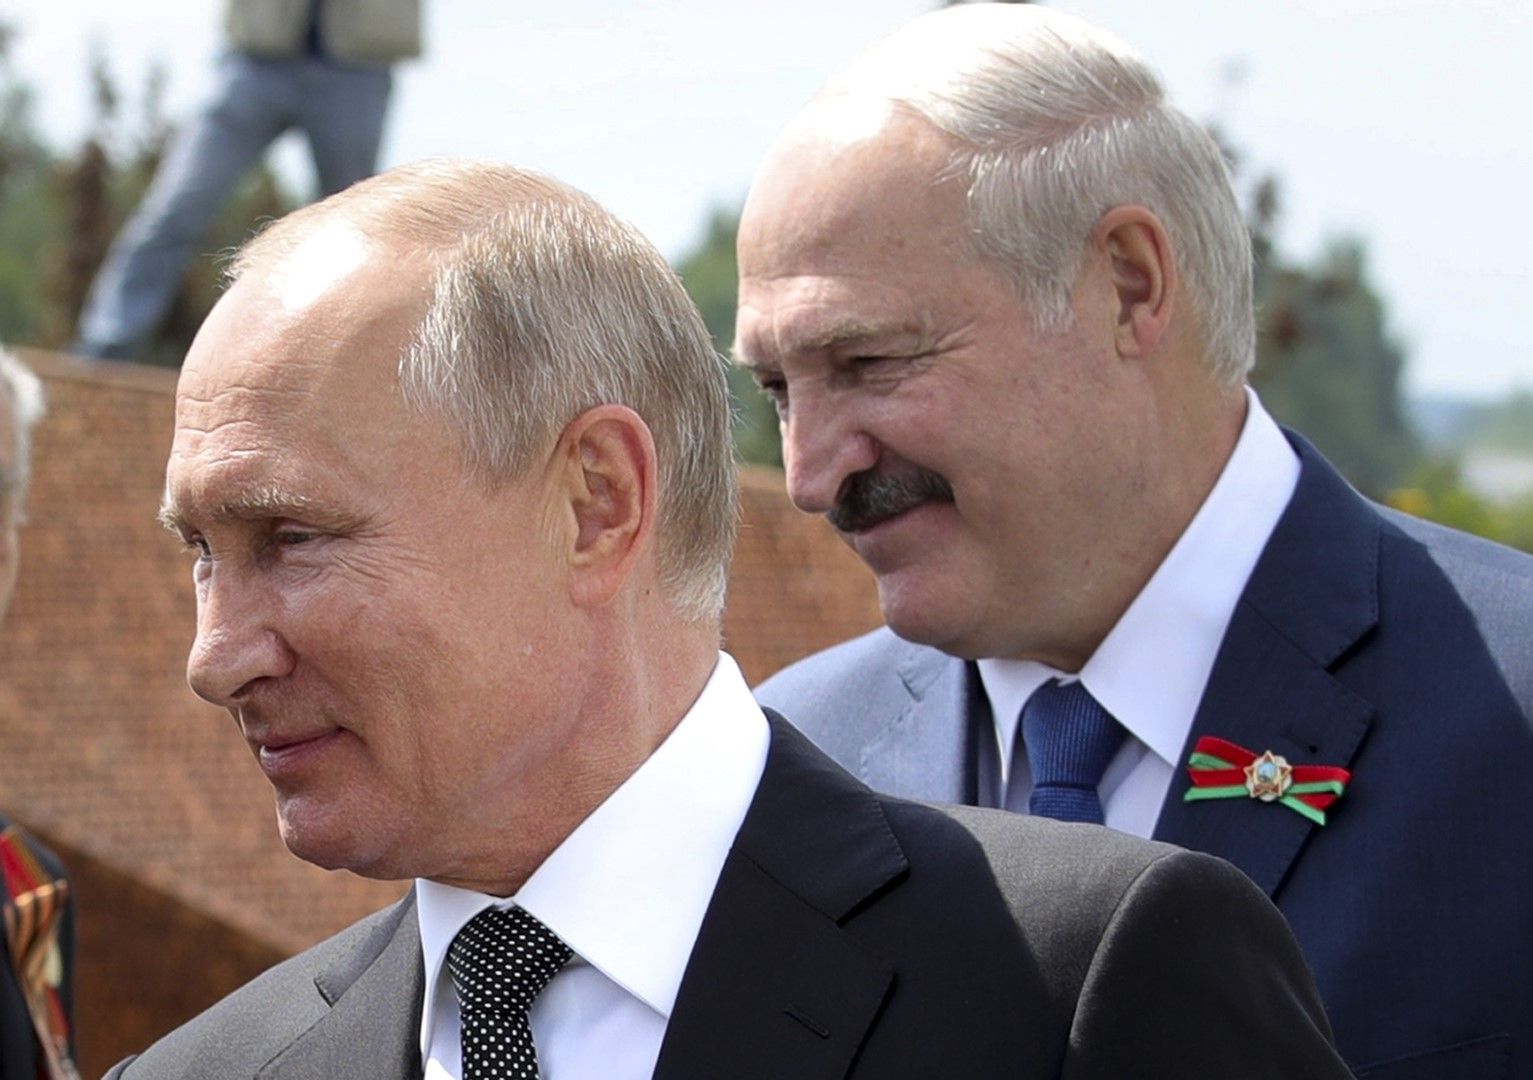 Владимир Путин и Александър Лукашенко разговарят с ветерани от Втората световна война по време на откриването на монумент в тяхна чест в Хорошево, северозападно от Москва на 30 юни 2020 г.